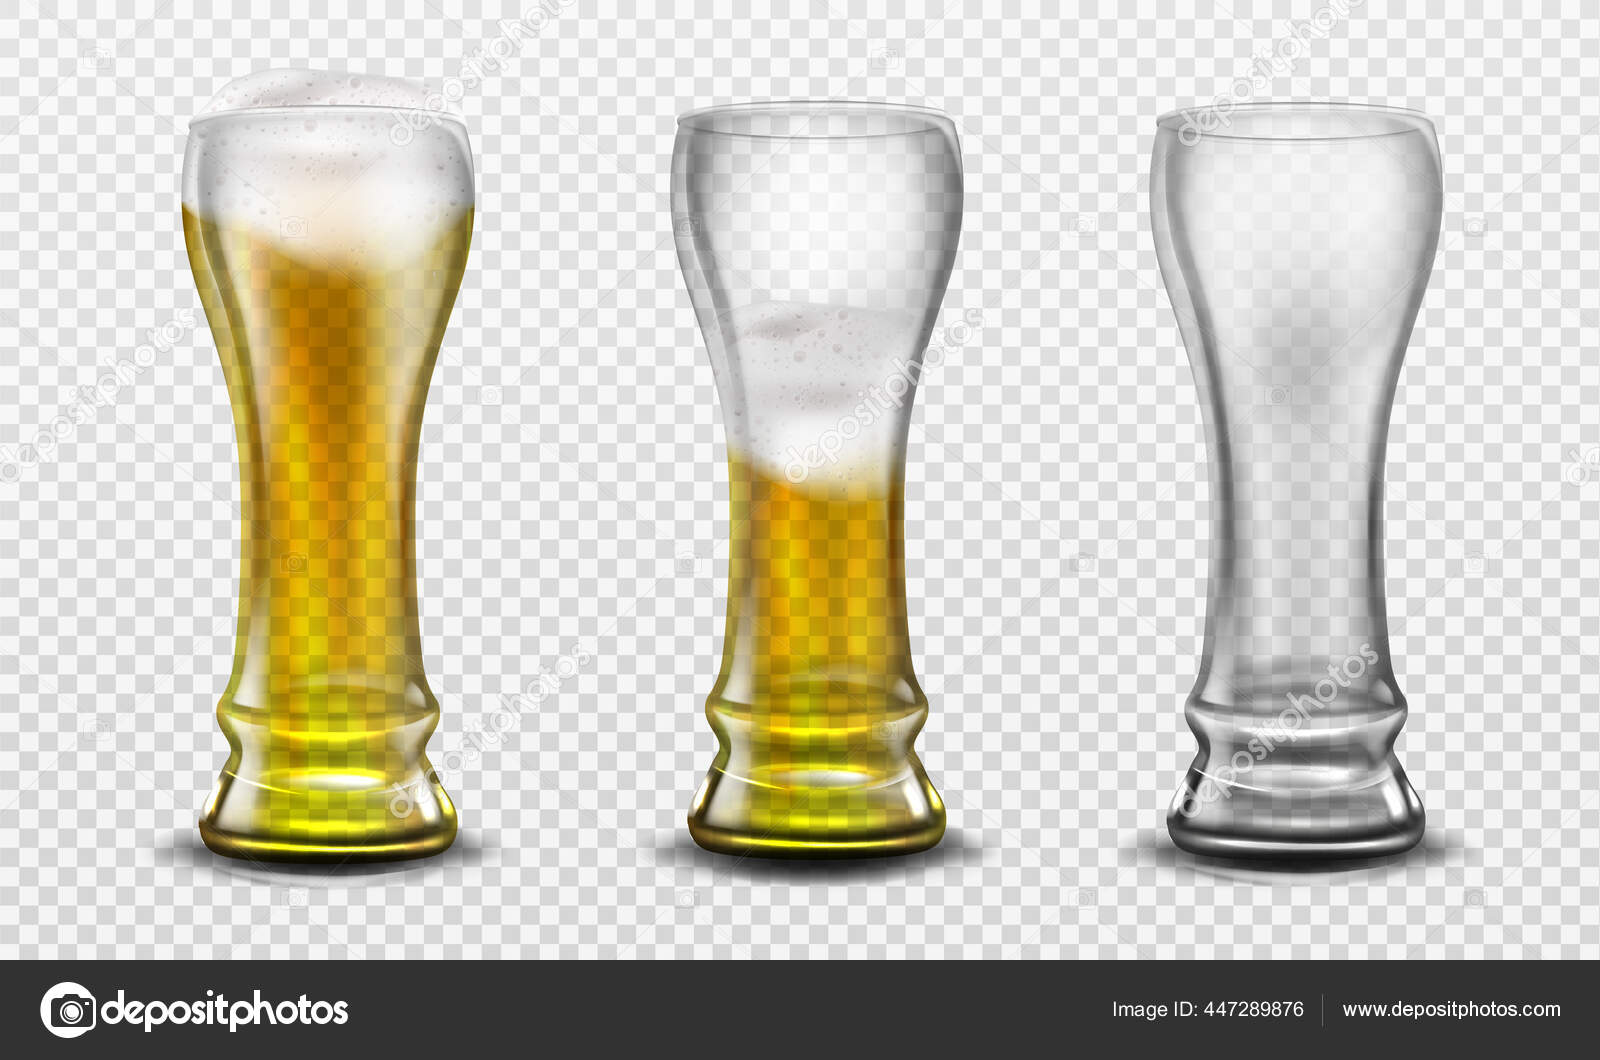 https://st2.depositphotos.com/3877249/44728/v/1600/depositphotos_447289876-stock-illustration-tall-glass-full-of-beer.jpg